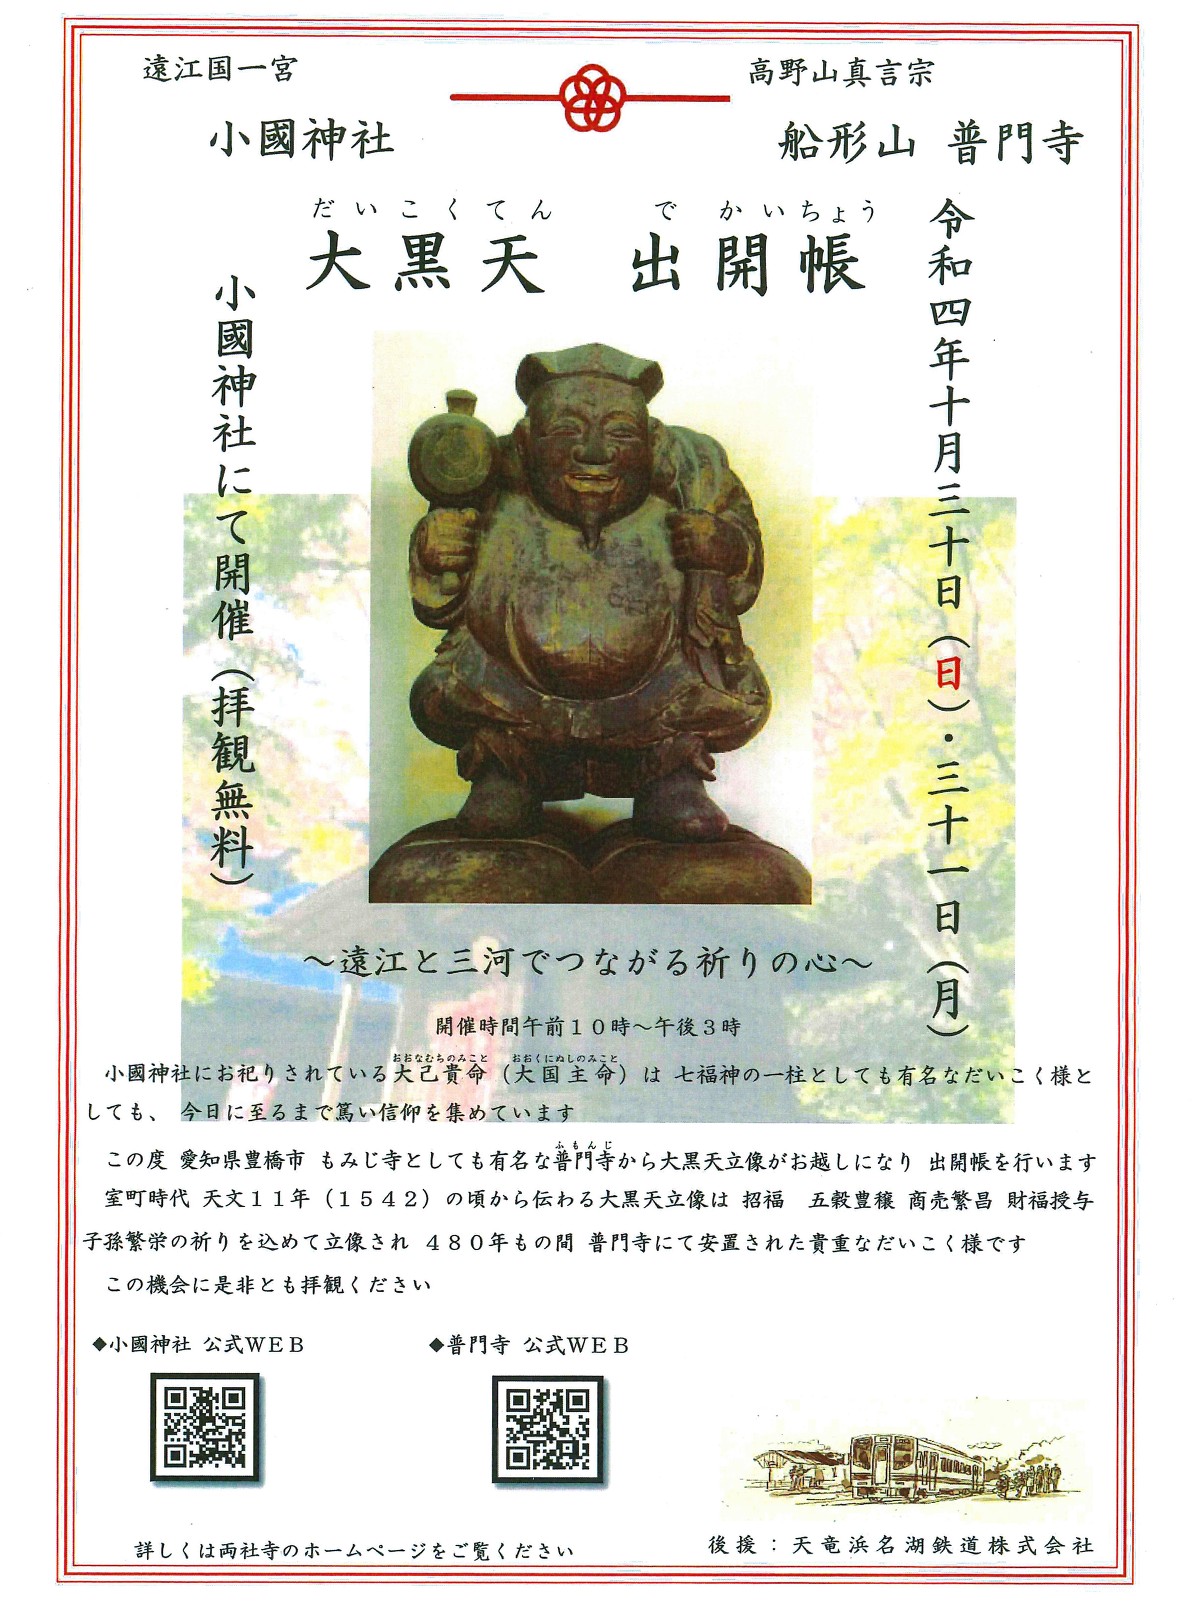 神社とお寺が伝えたい日本のこころ 約５００年前に造像された大黒天像（愛知県 普門寺(ふもんじ) 所蔵）の出開帳を小國神社で行います